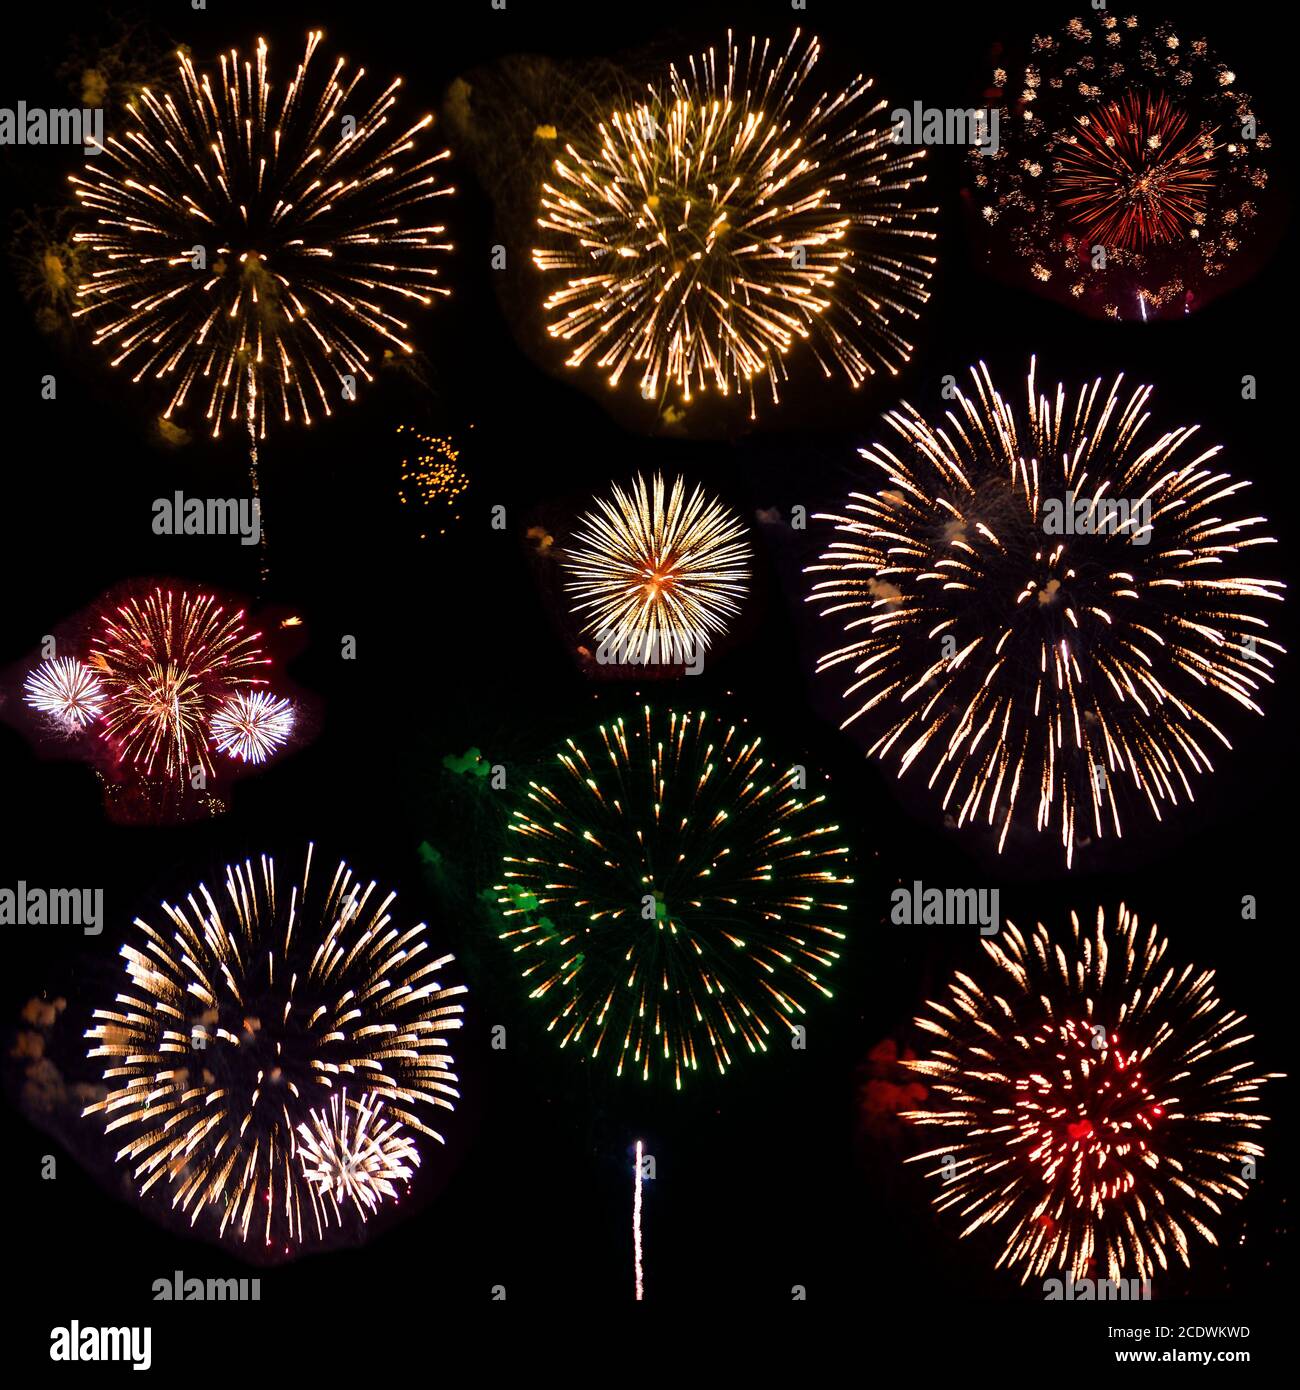 Colorful set of nine exploding fireworks, isolated on black background Stock Photo